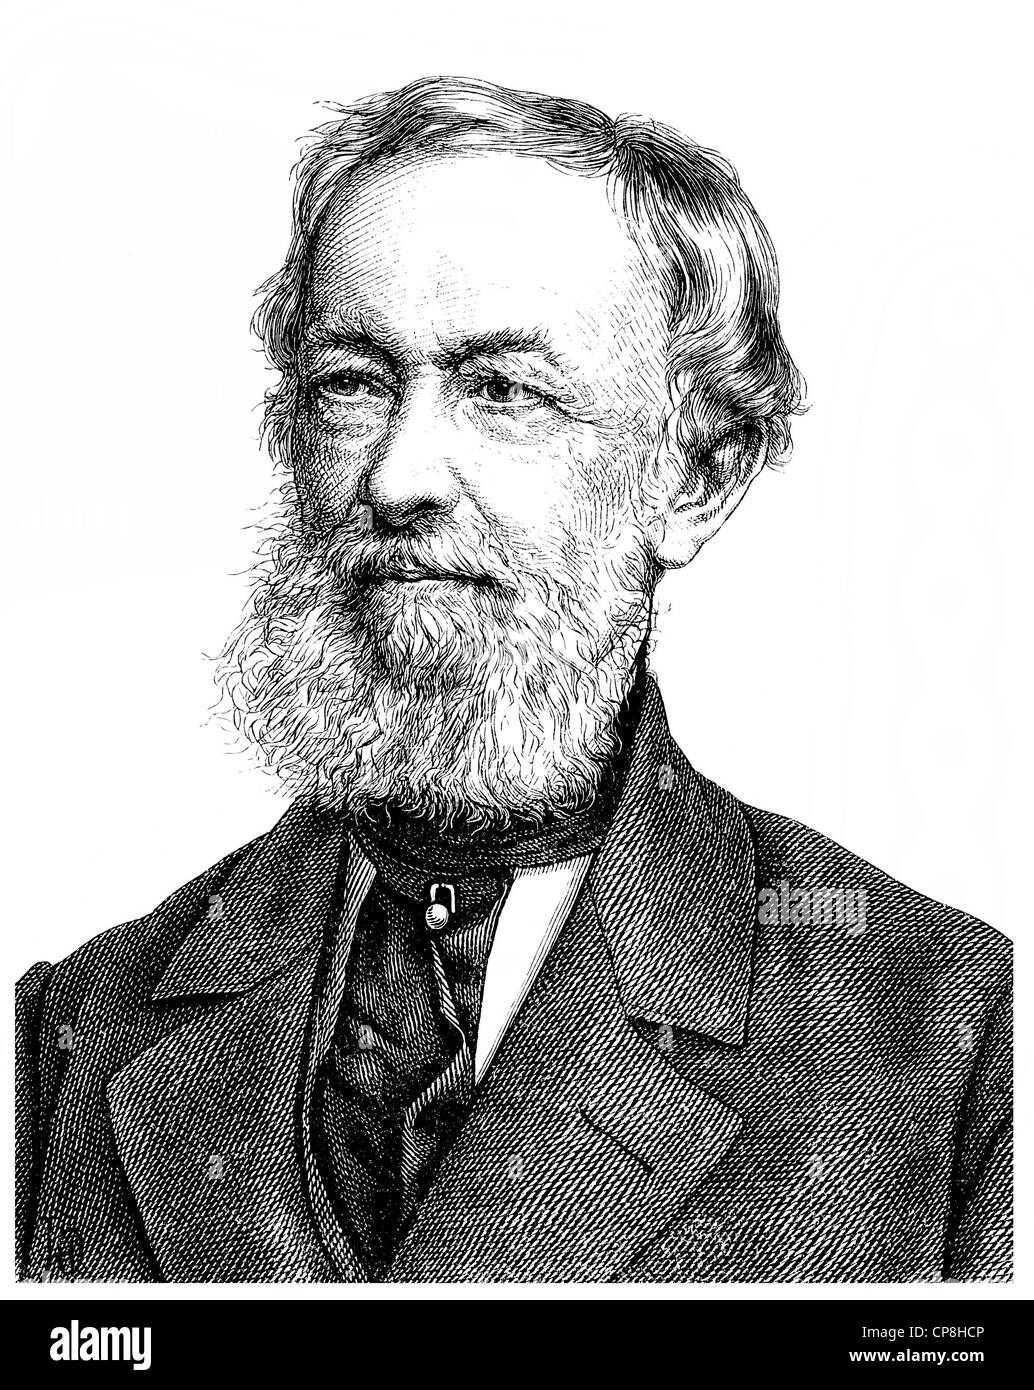 Alfred Krupp, 1812-1887, ein deutscher Industrieller und Erfinder, jetzt ThyssenKrupp AG, Historische Zeichnung aus Dem 19. Jahrhunde Stockfoto